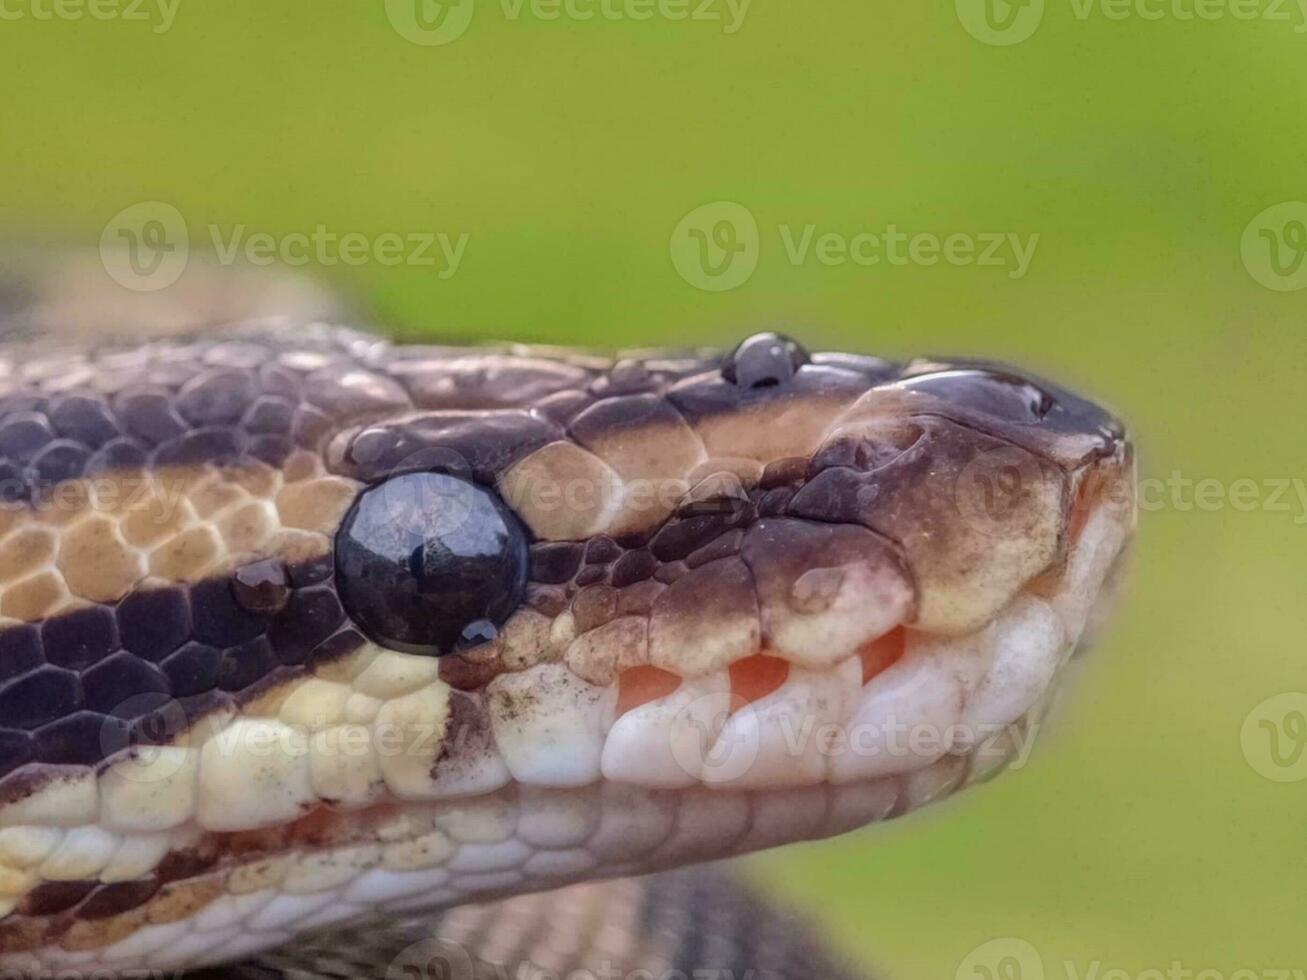 de cerca de serpiente - fauna silvestre con advertencia firmar foto